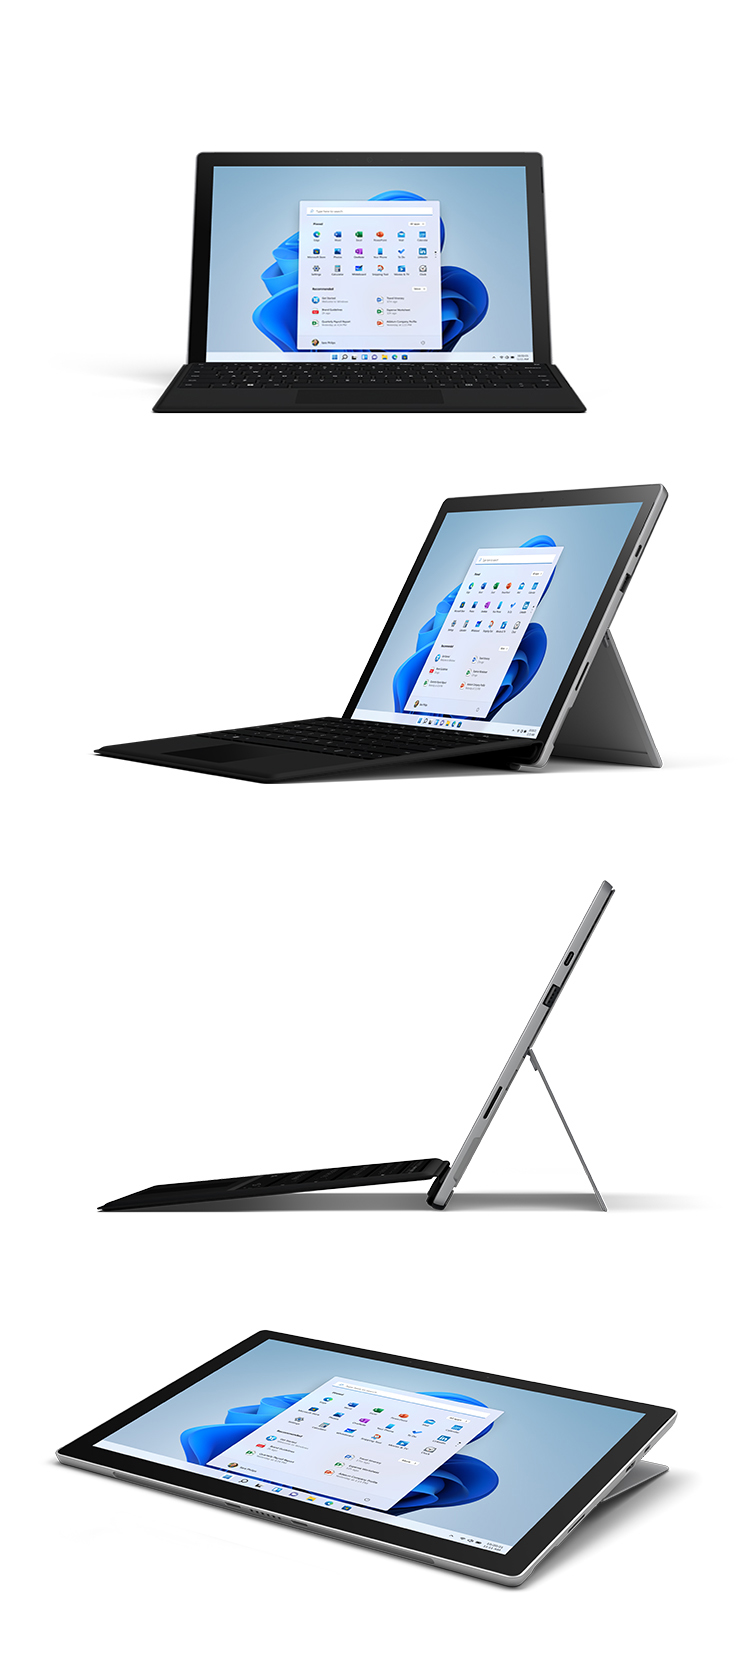 Abbildungen des Surface Pro 7+ mit Type Cover in Platin von vorne, schräg, von der Seite und im Studio-Modus.